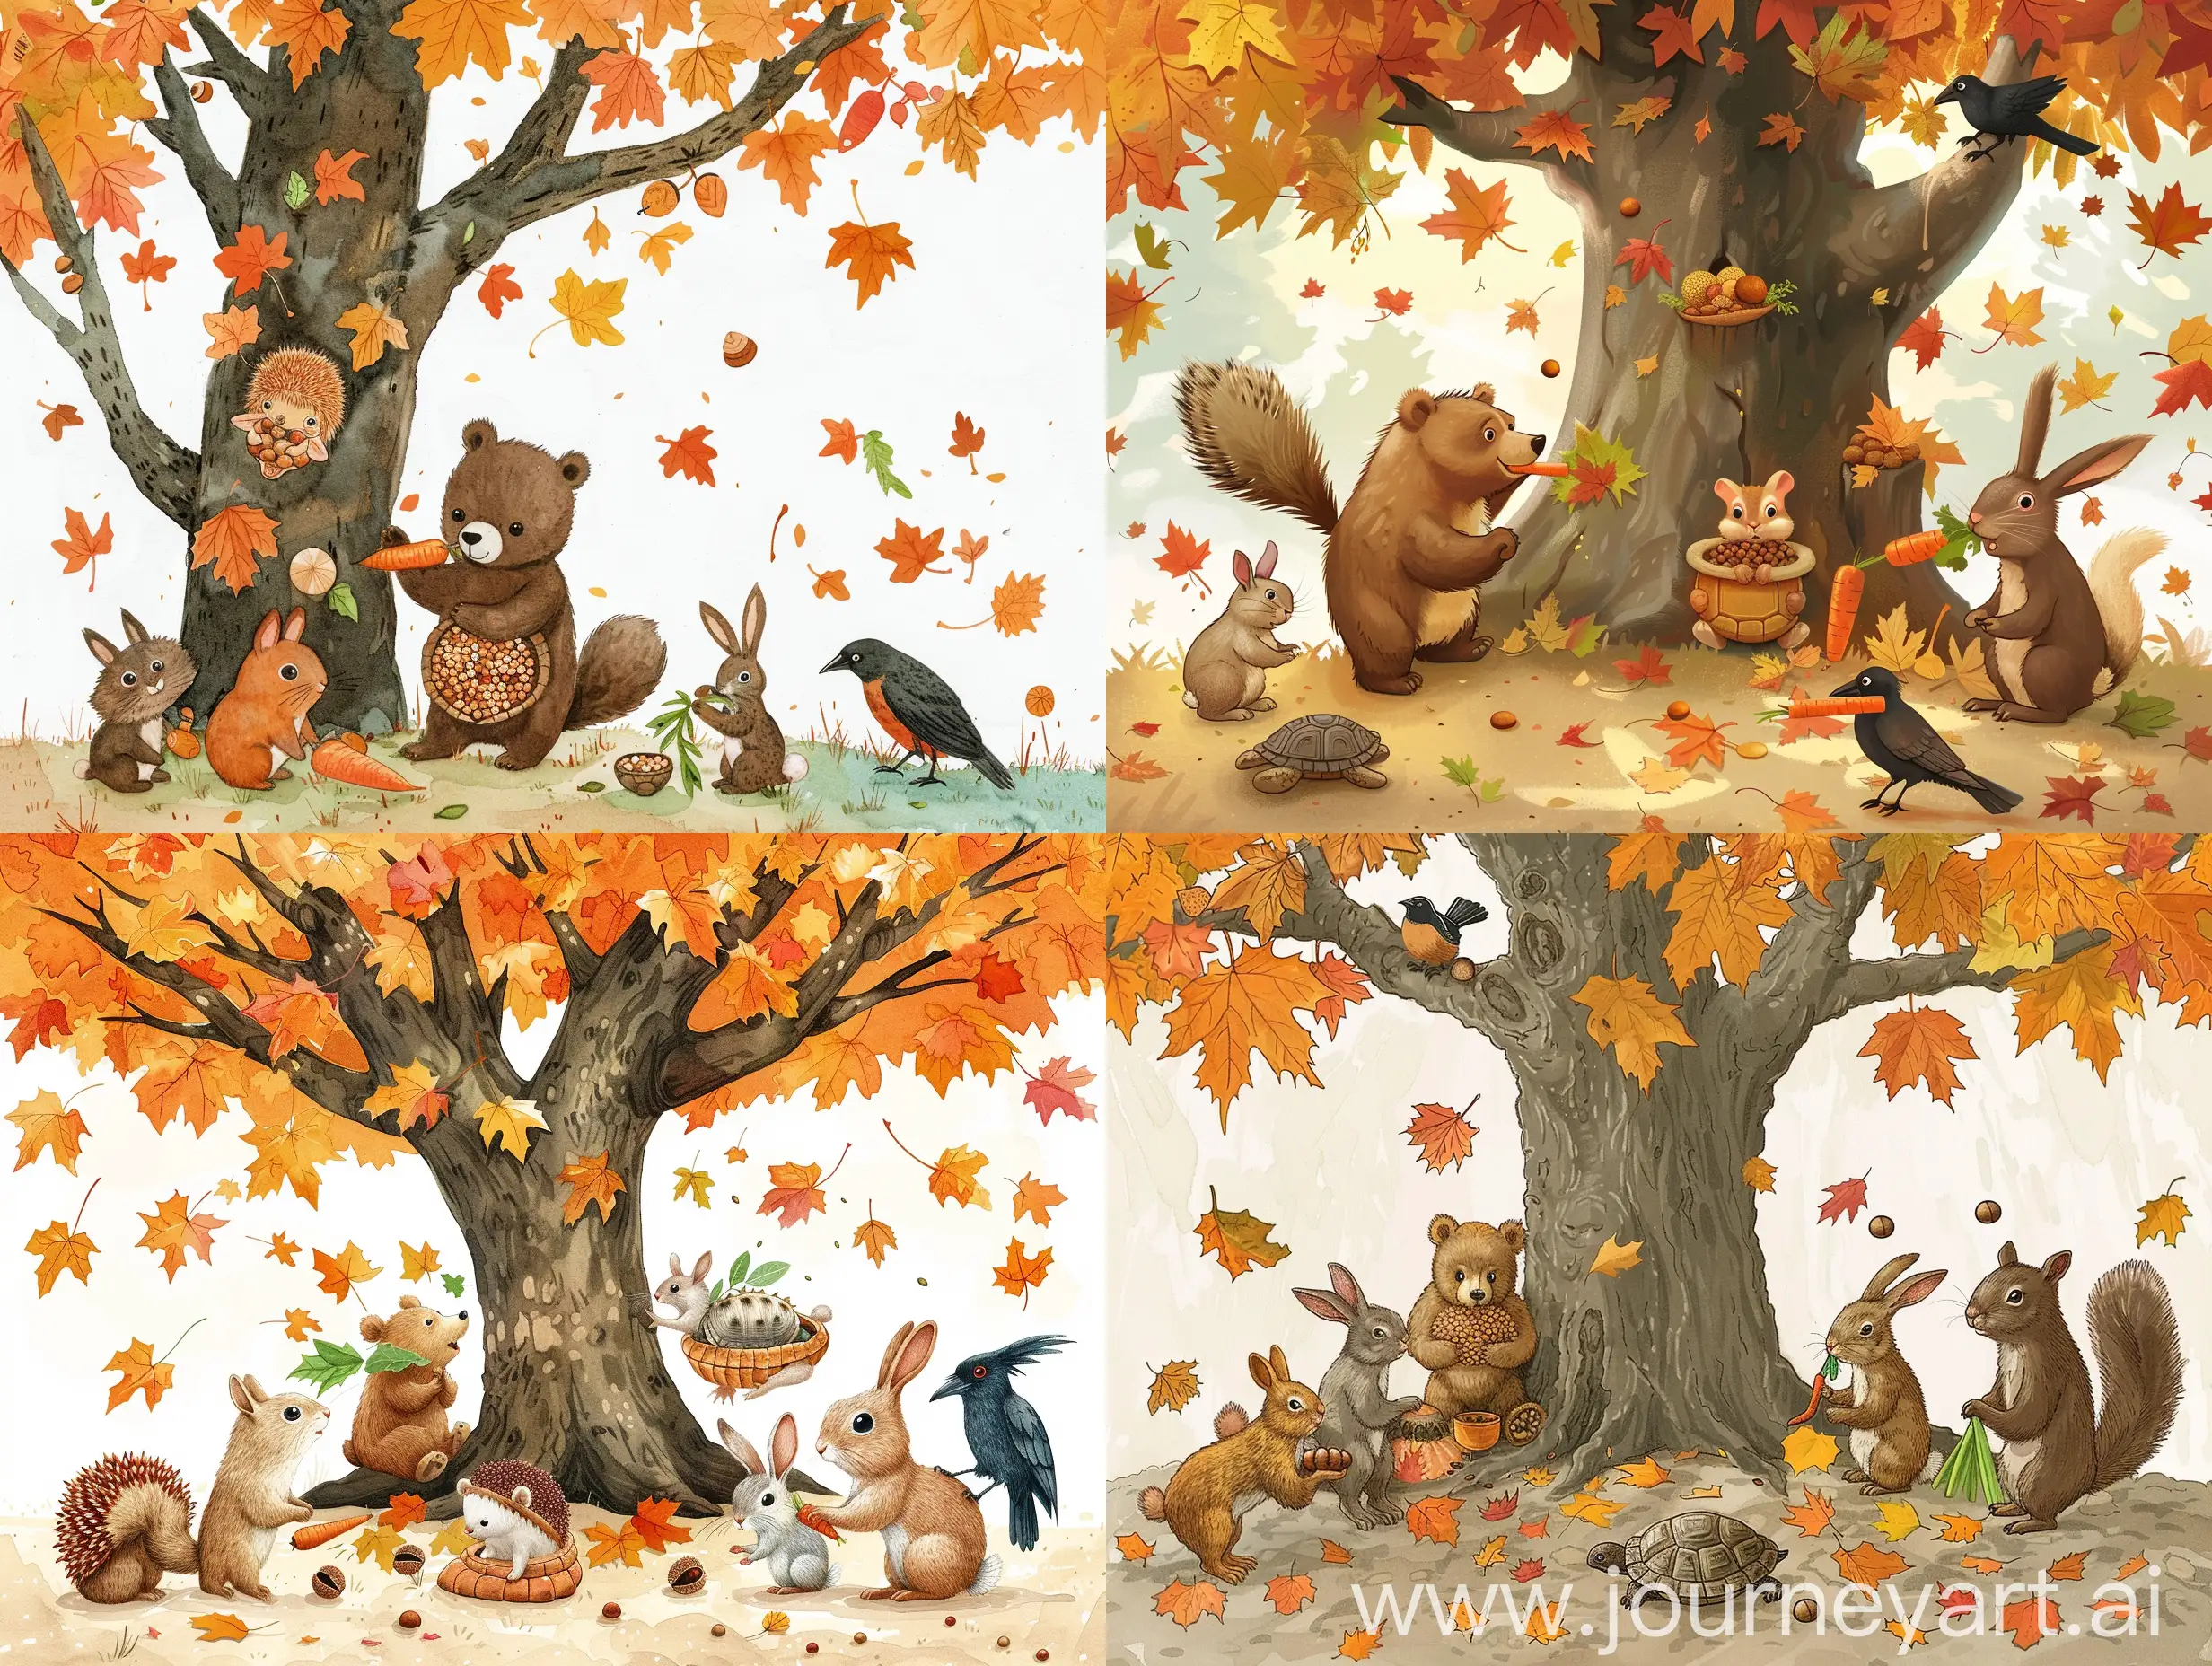 Autumn-Gathering-Friends-Under-the-Chestnut-Tree